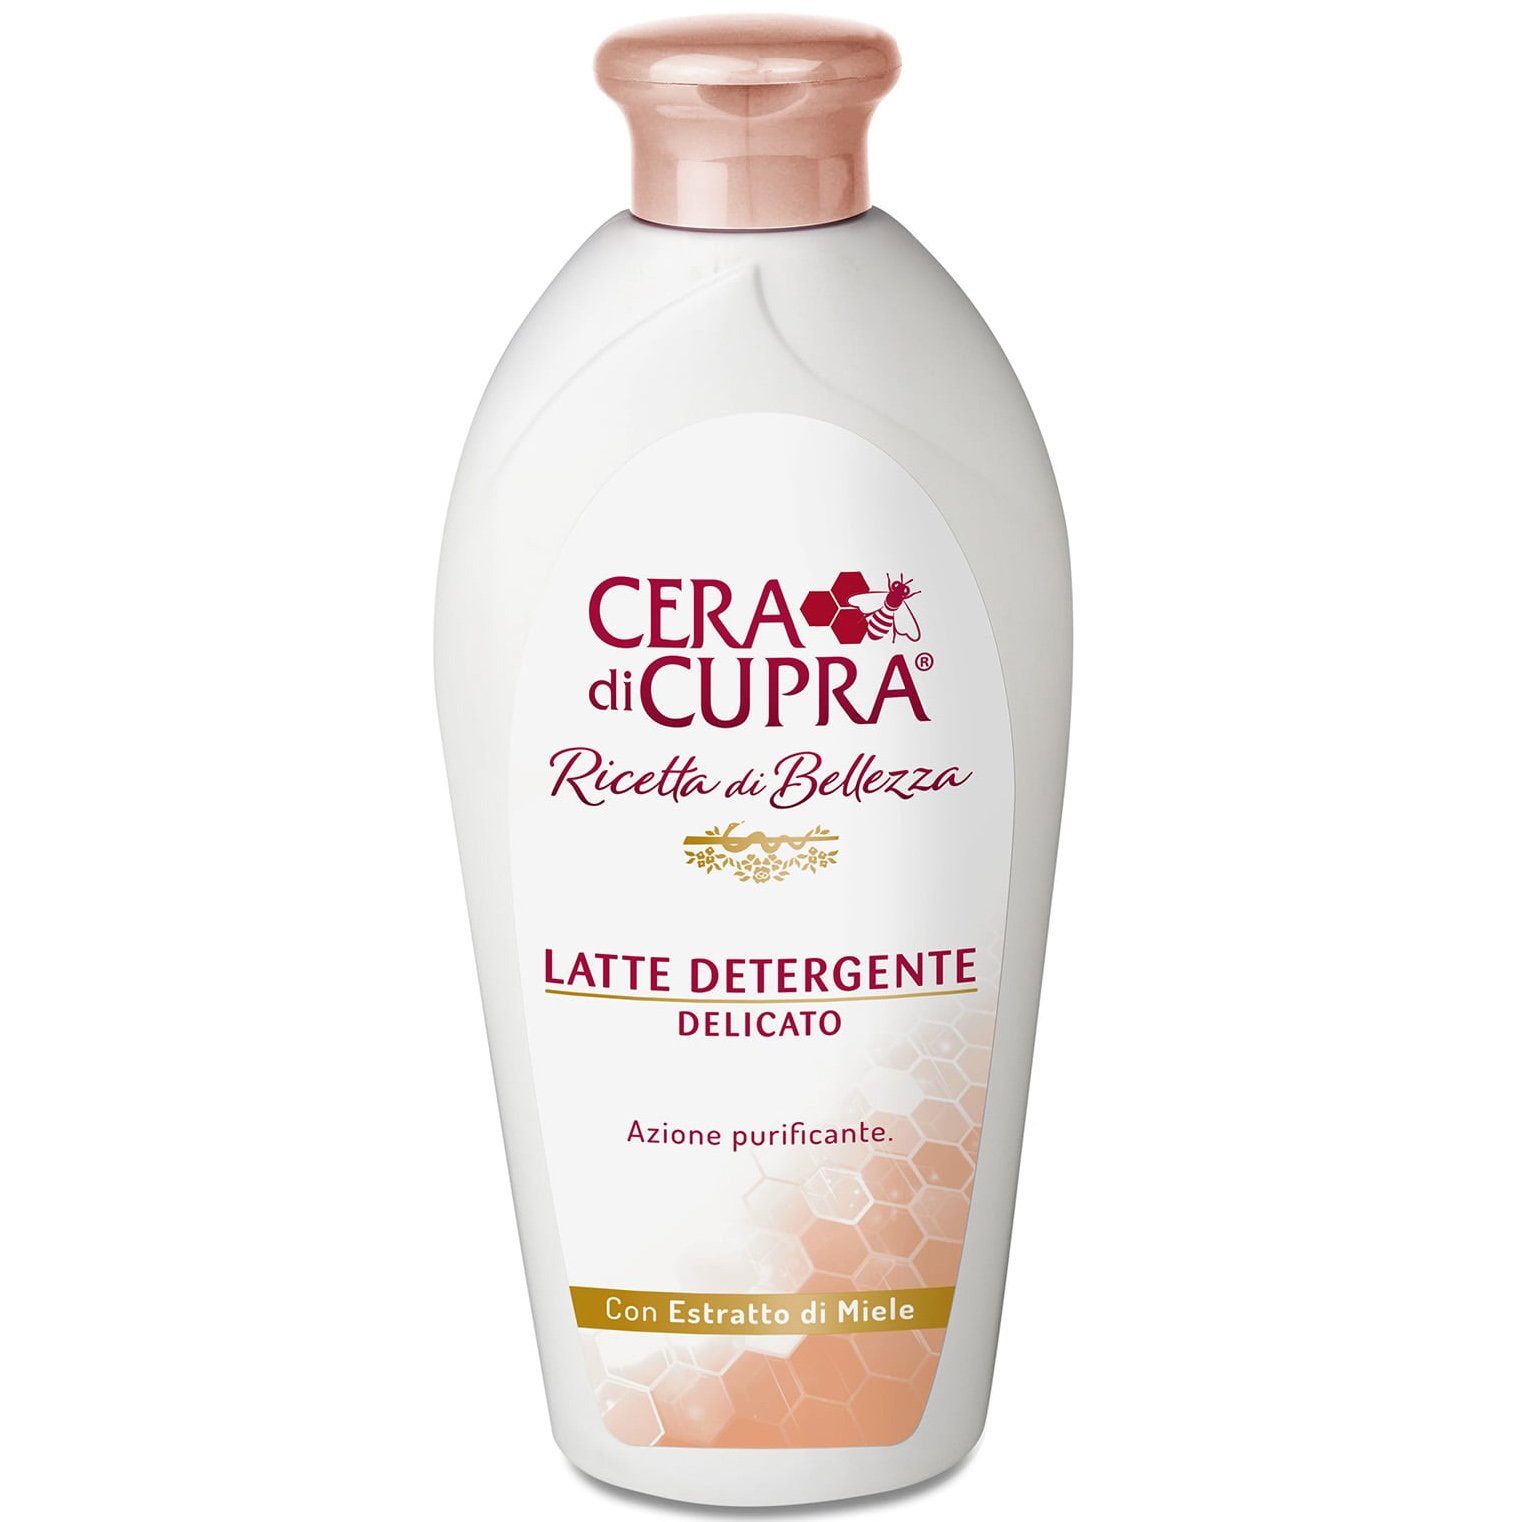 Cera di Cupra Ricetta di Bellezza Latte Detergente Καθαριστικό Γαλάκτωμα Προσώπου 200ml